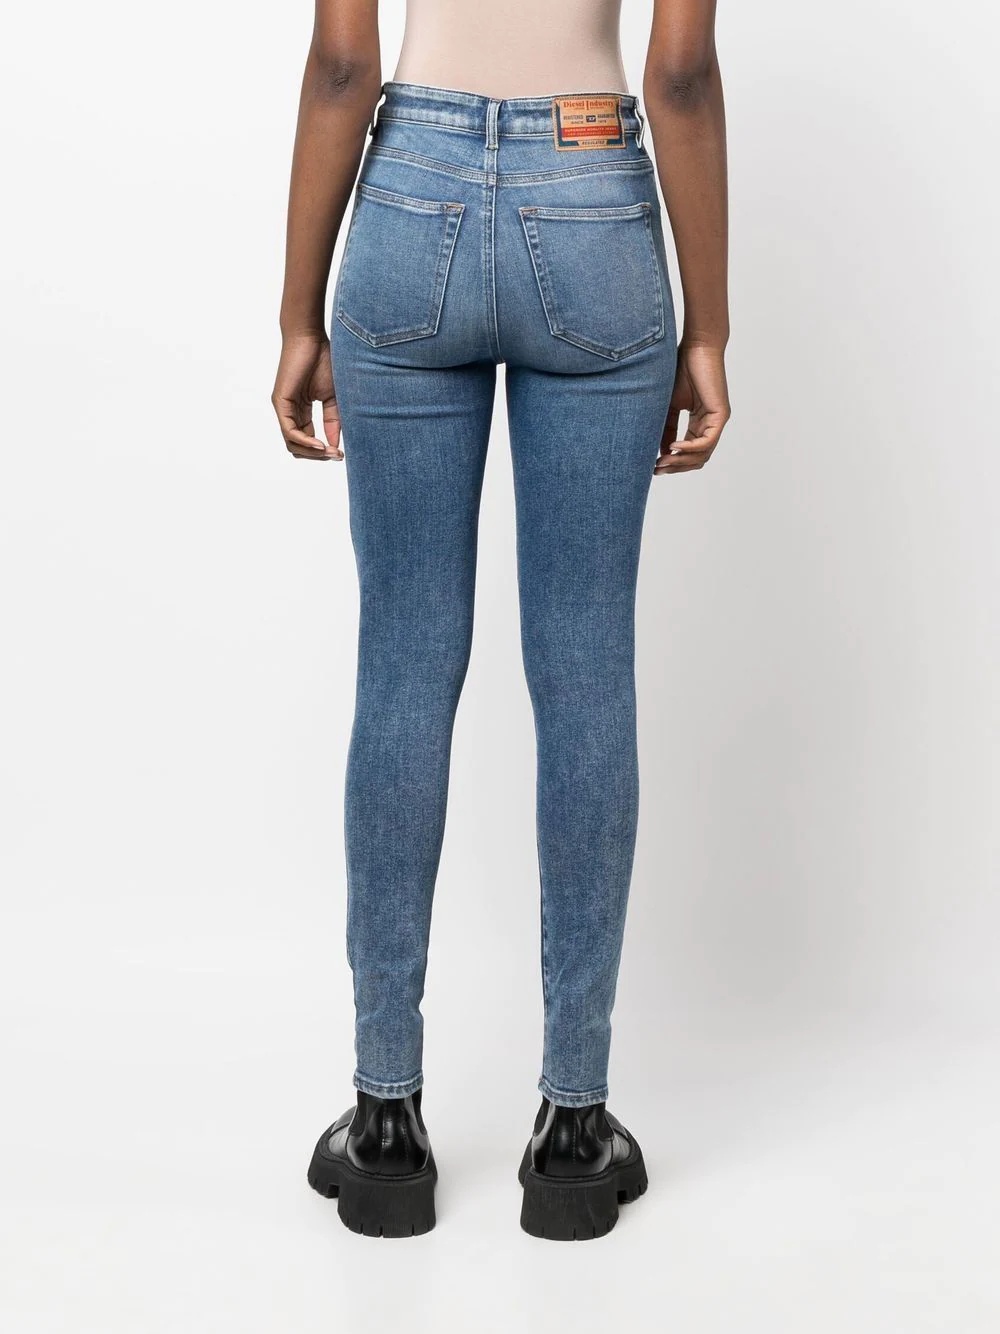 1984 Slandy high-waisted skinny jeans - 4